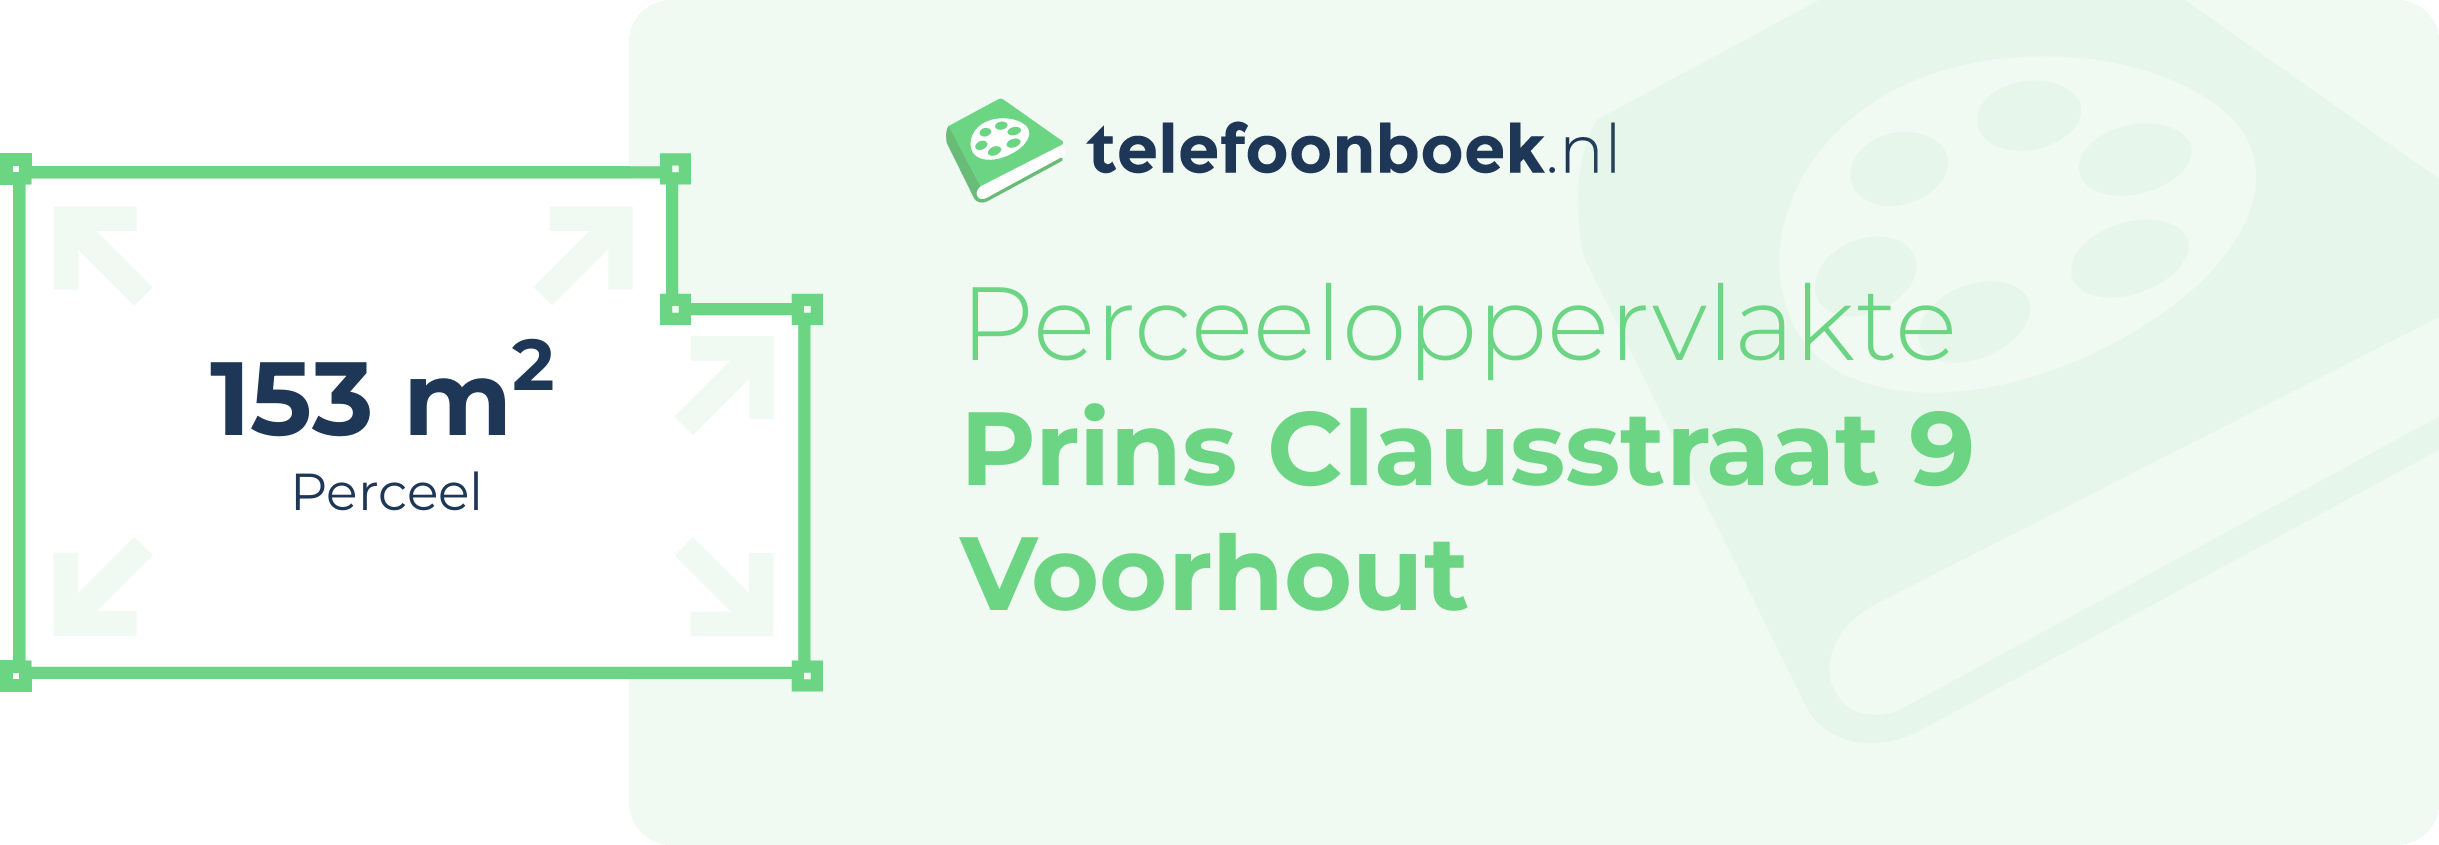 Perceeloppervlakte Prins Clausstraat 9 Voorhout